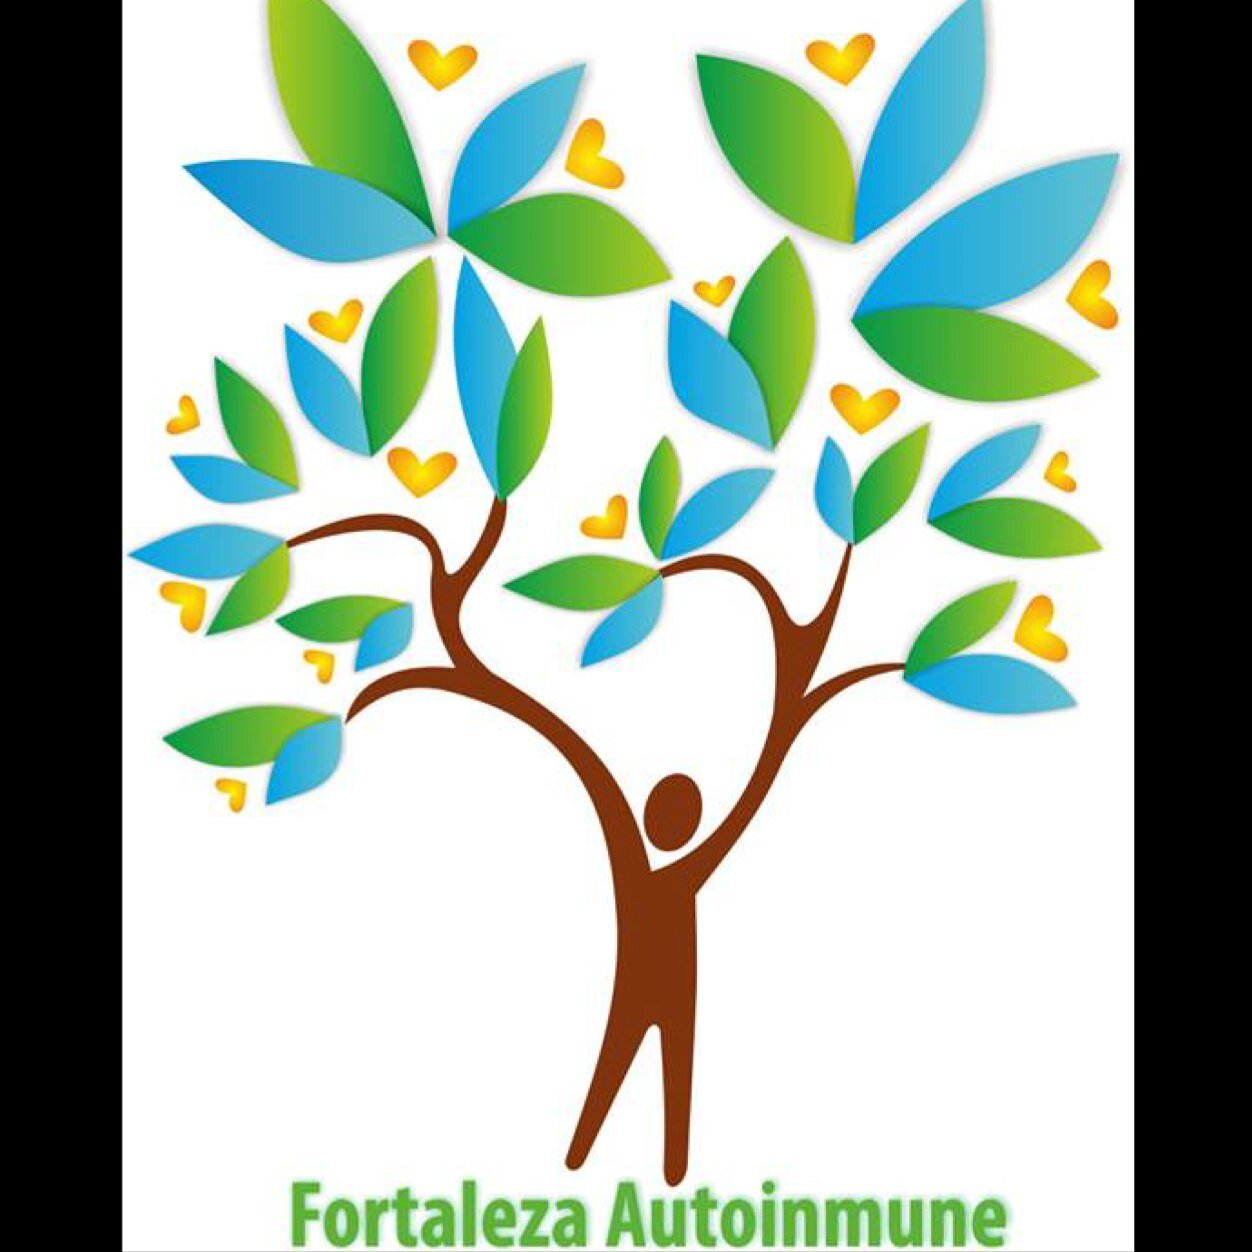 La Fundación Fortaleza Autoinmune busca crear espacios donde se de apoyo a personas que tiene un enfermedad autoinmune y sus familiares.